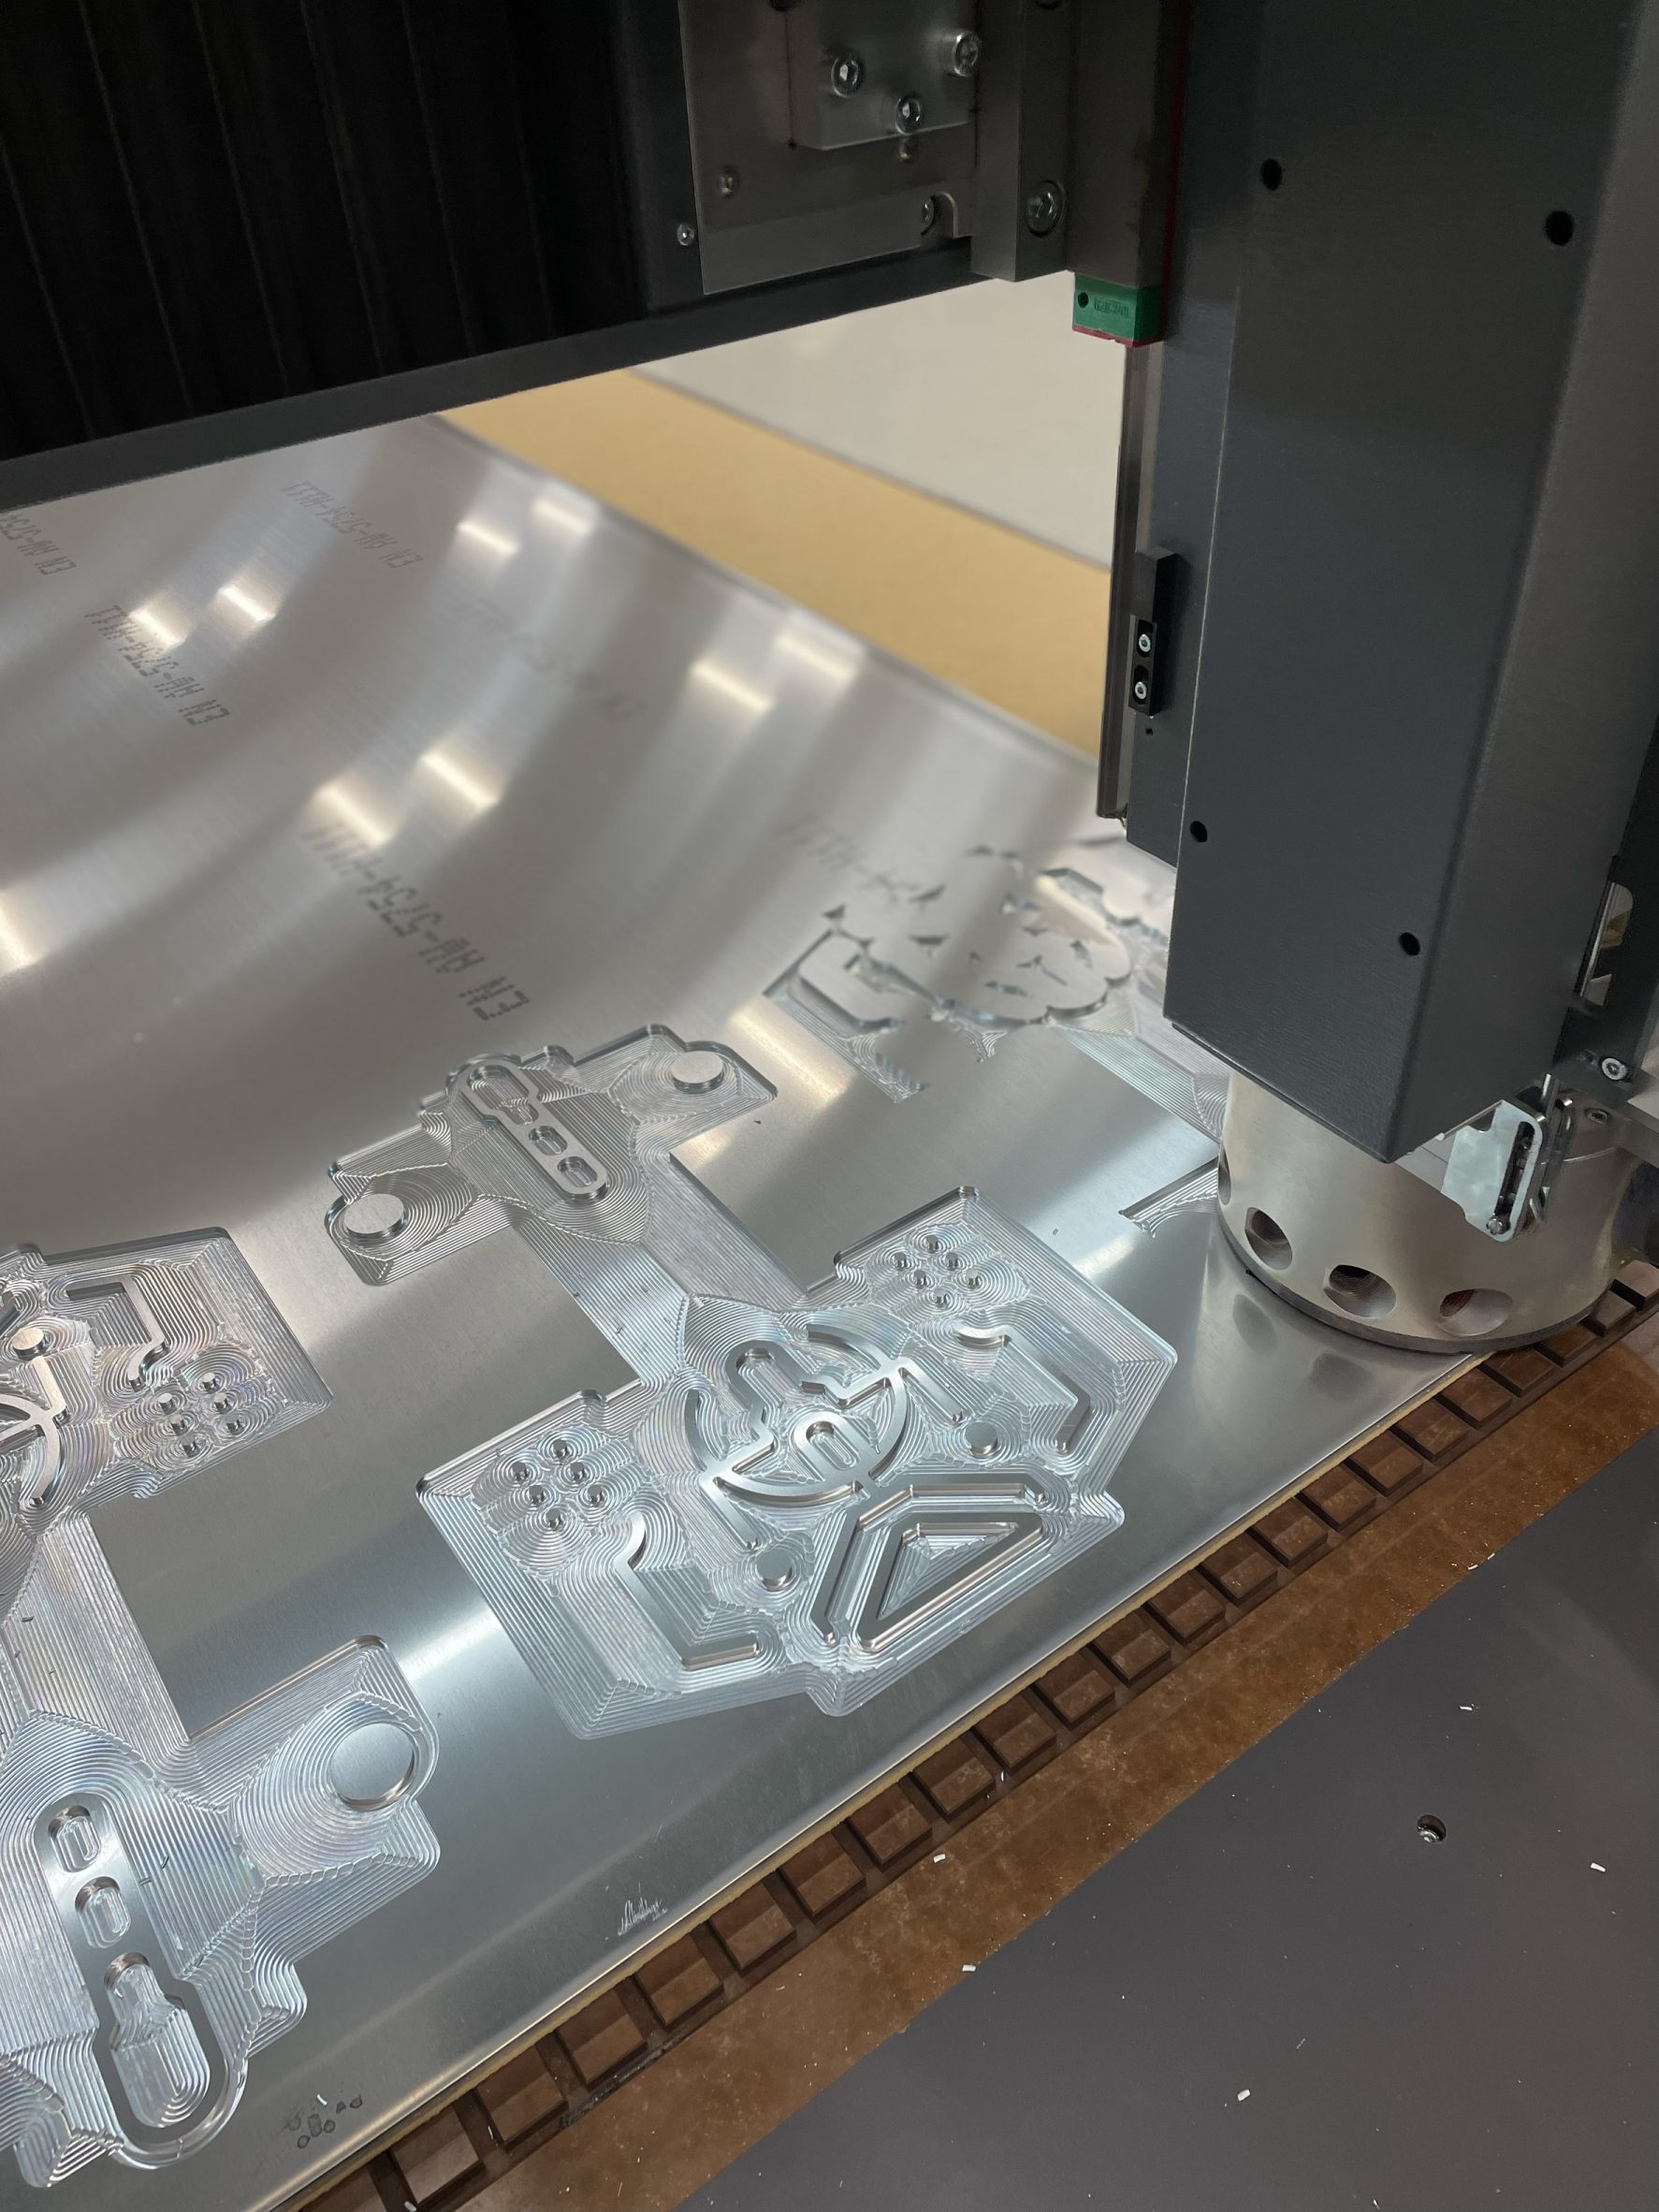 CNC milling machine cutting a piece of aluminium